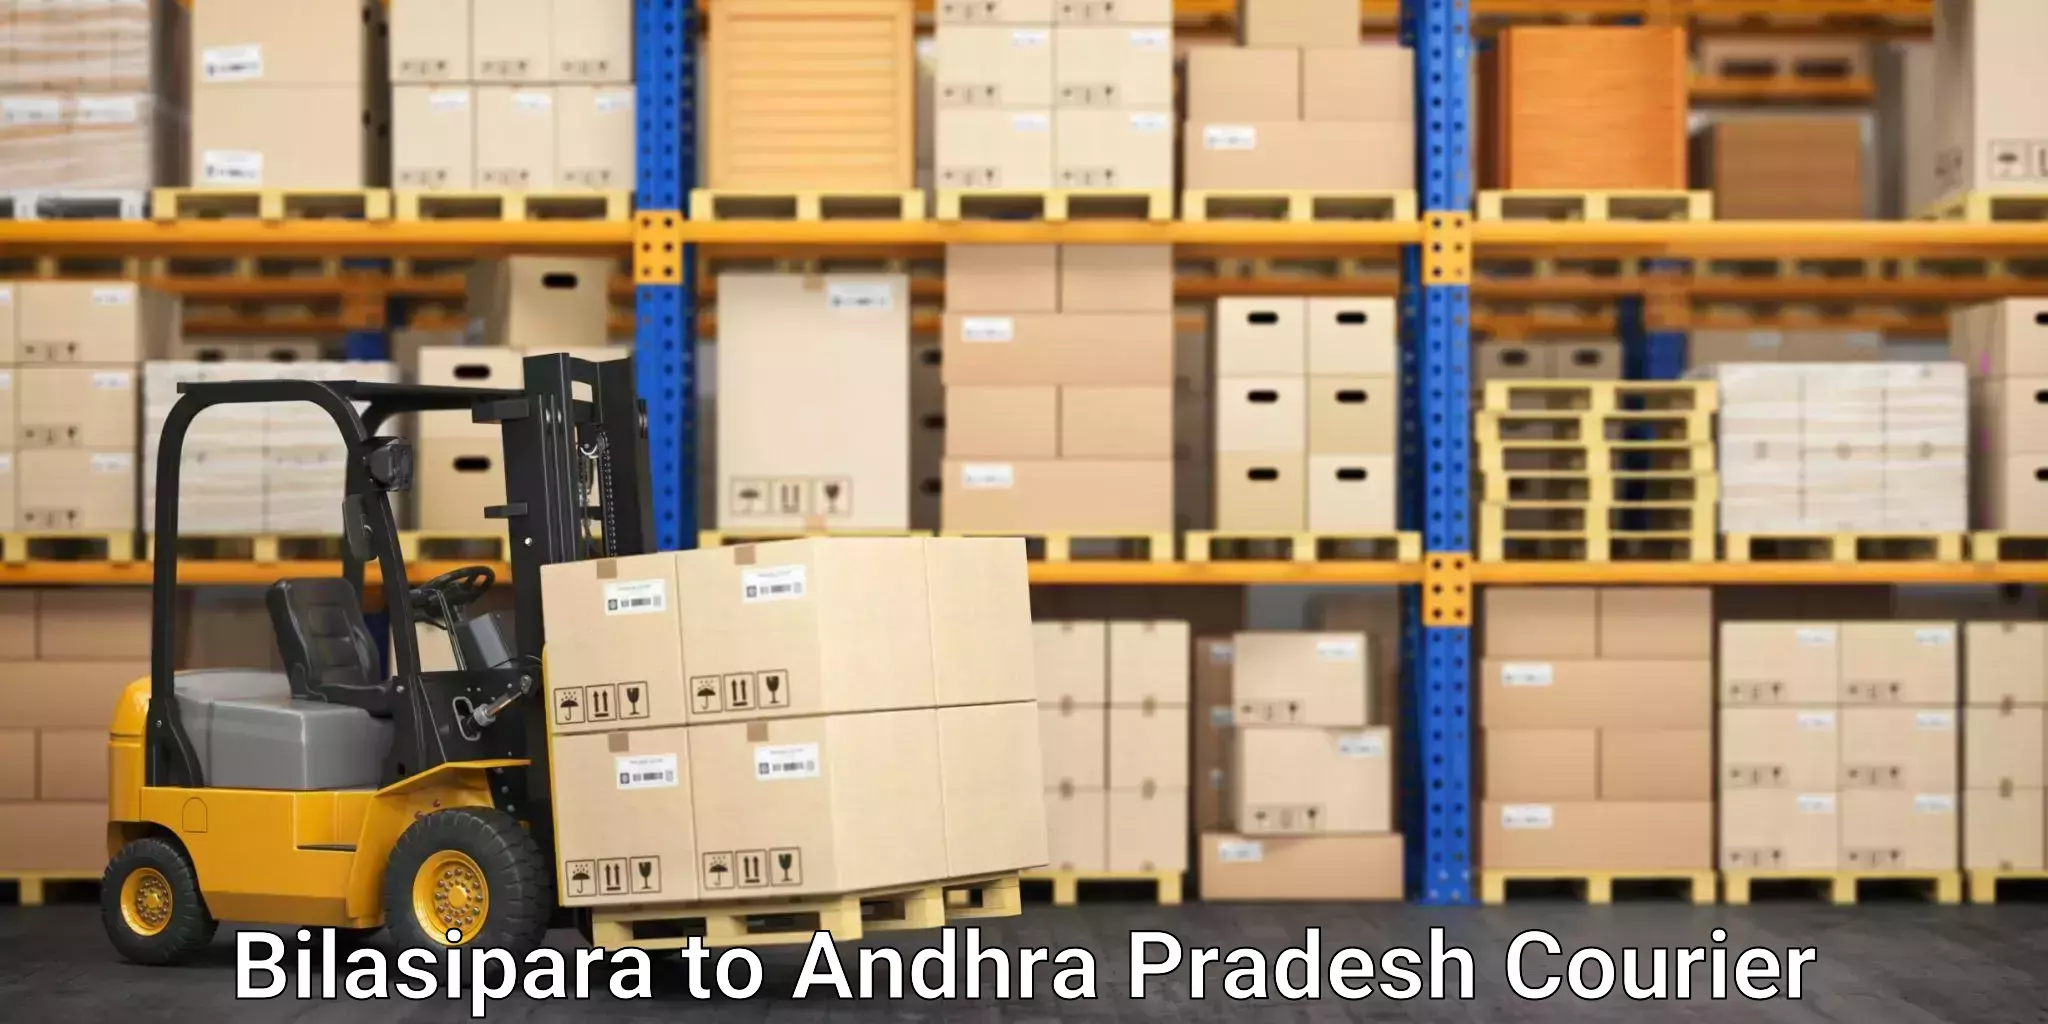 Affordable international shipping Bilasipara to Andhra Pradesh